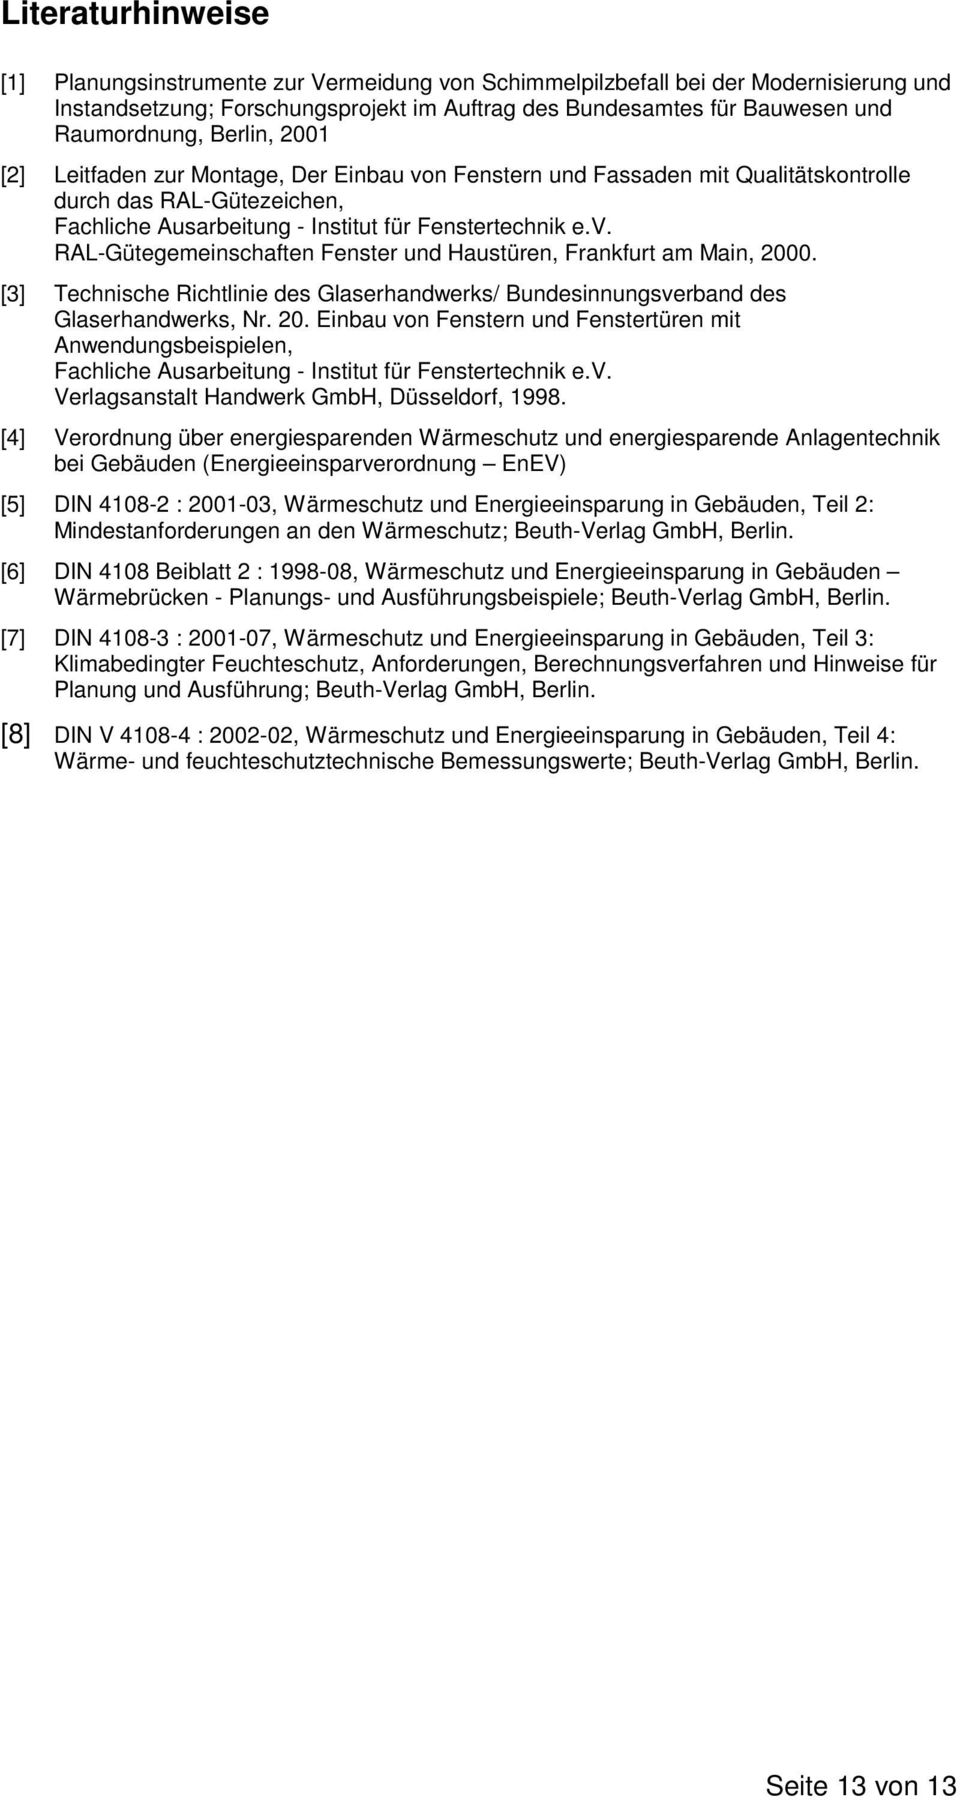 [3] Technische Richtlinie des Glaserhandwerks/ Bundesinnungsverband des Glaserhandwerks, Nr. 20.